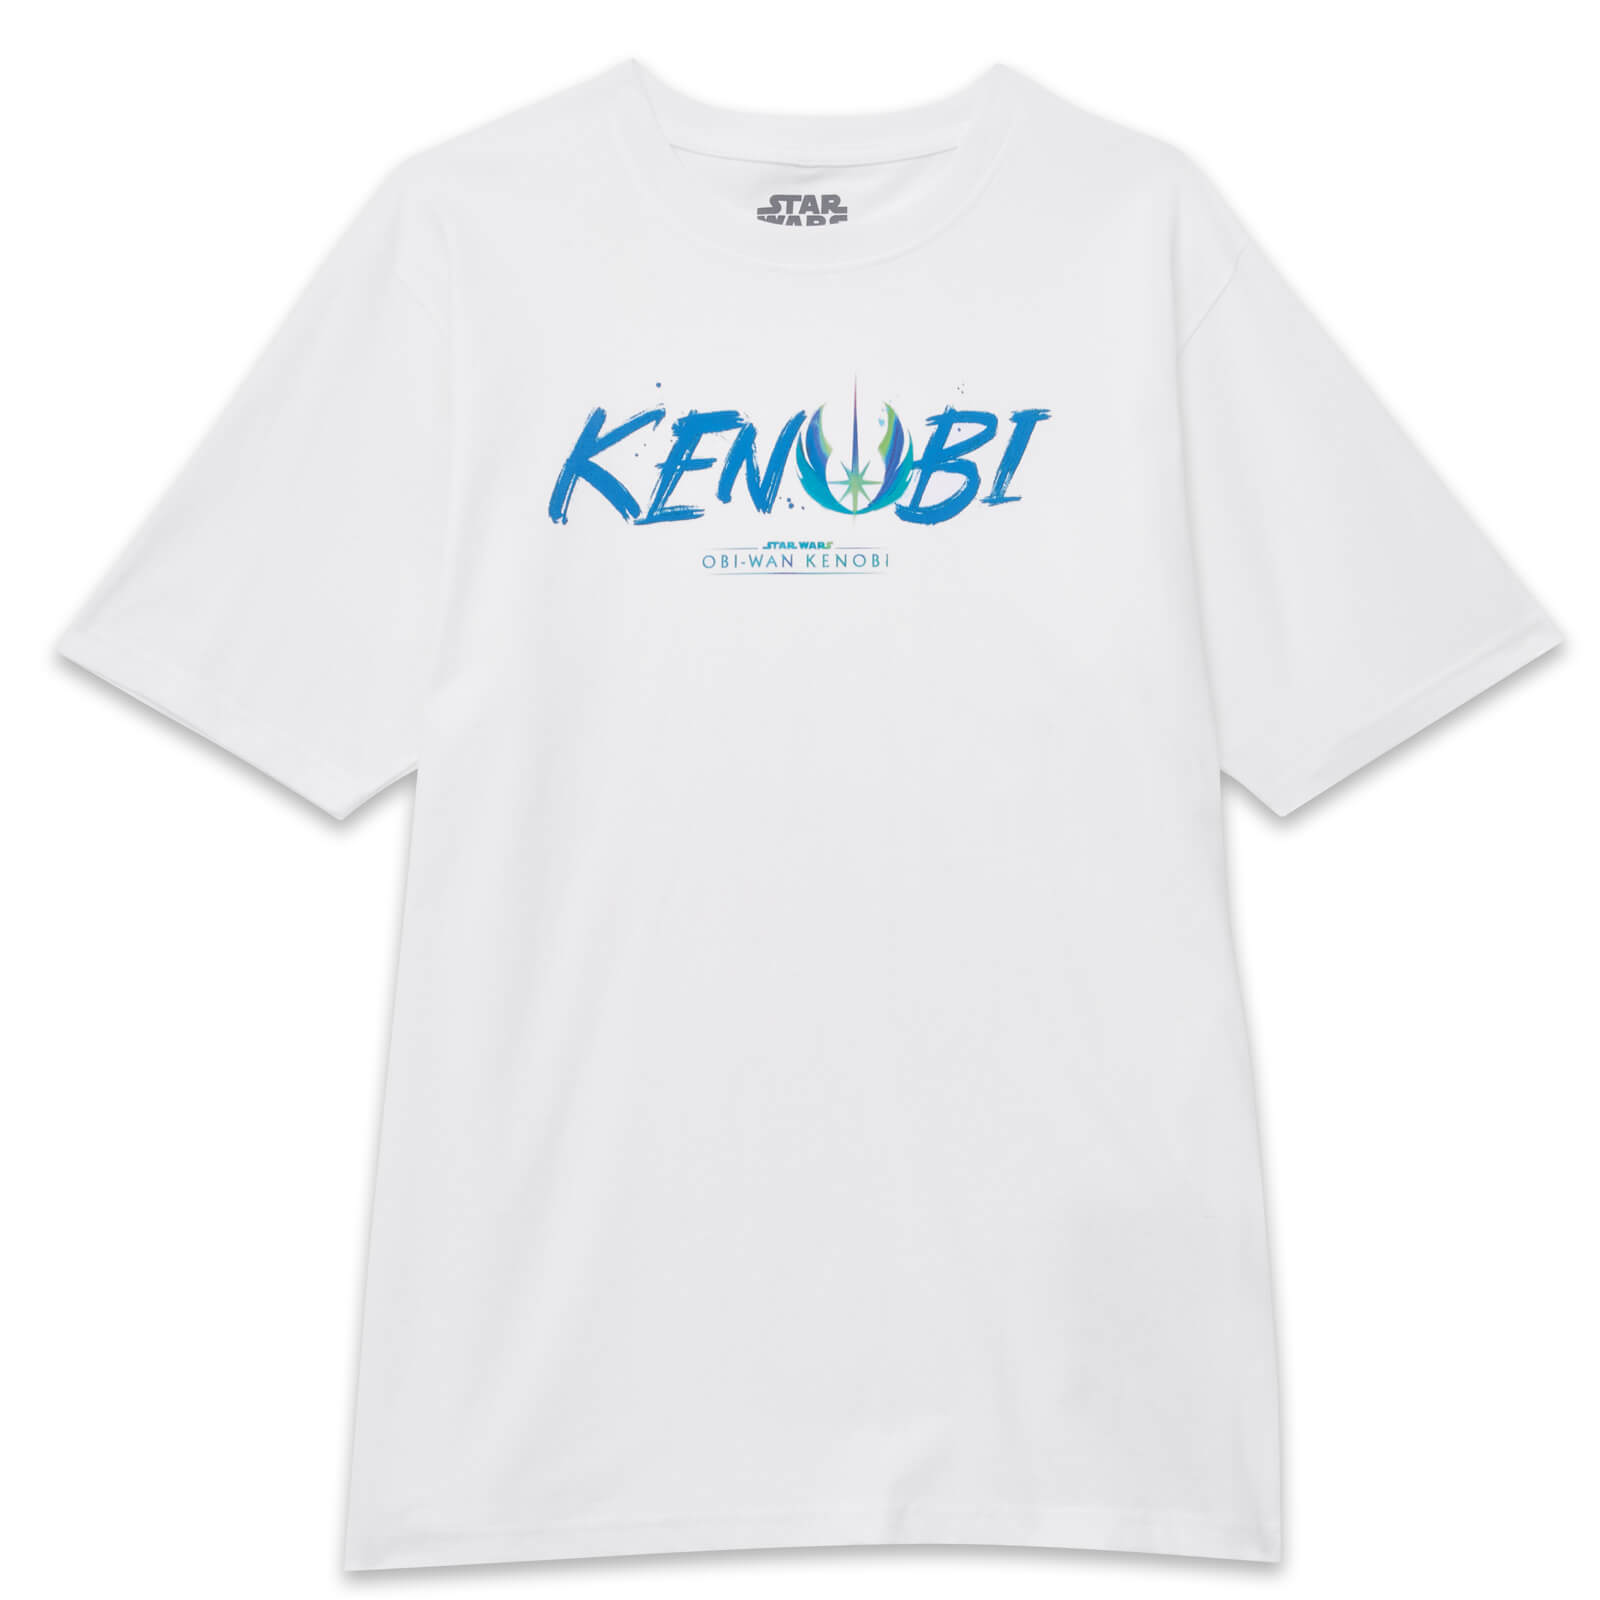 Star Wars Kenobi Painted Font Oversized Heavyweight T-Shirt - White - S